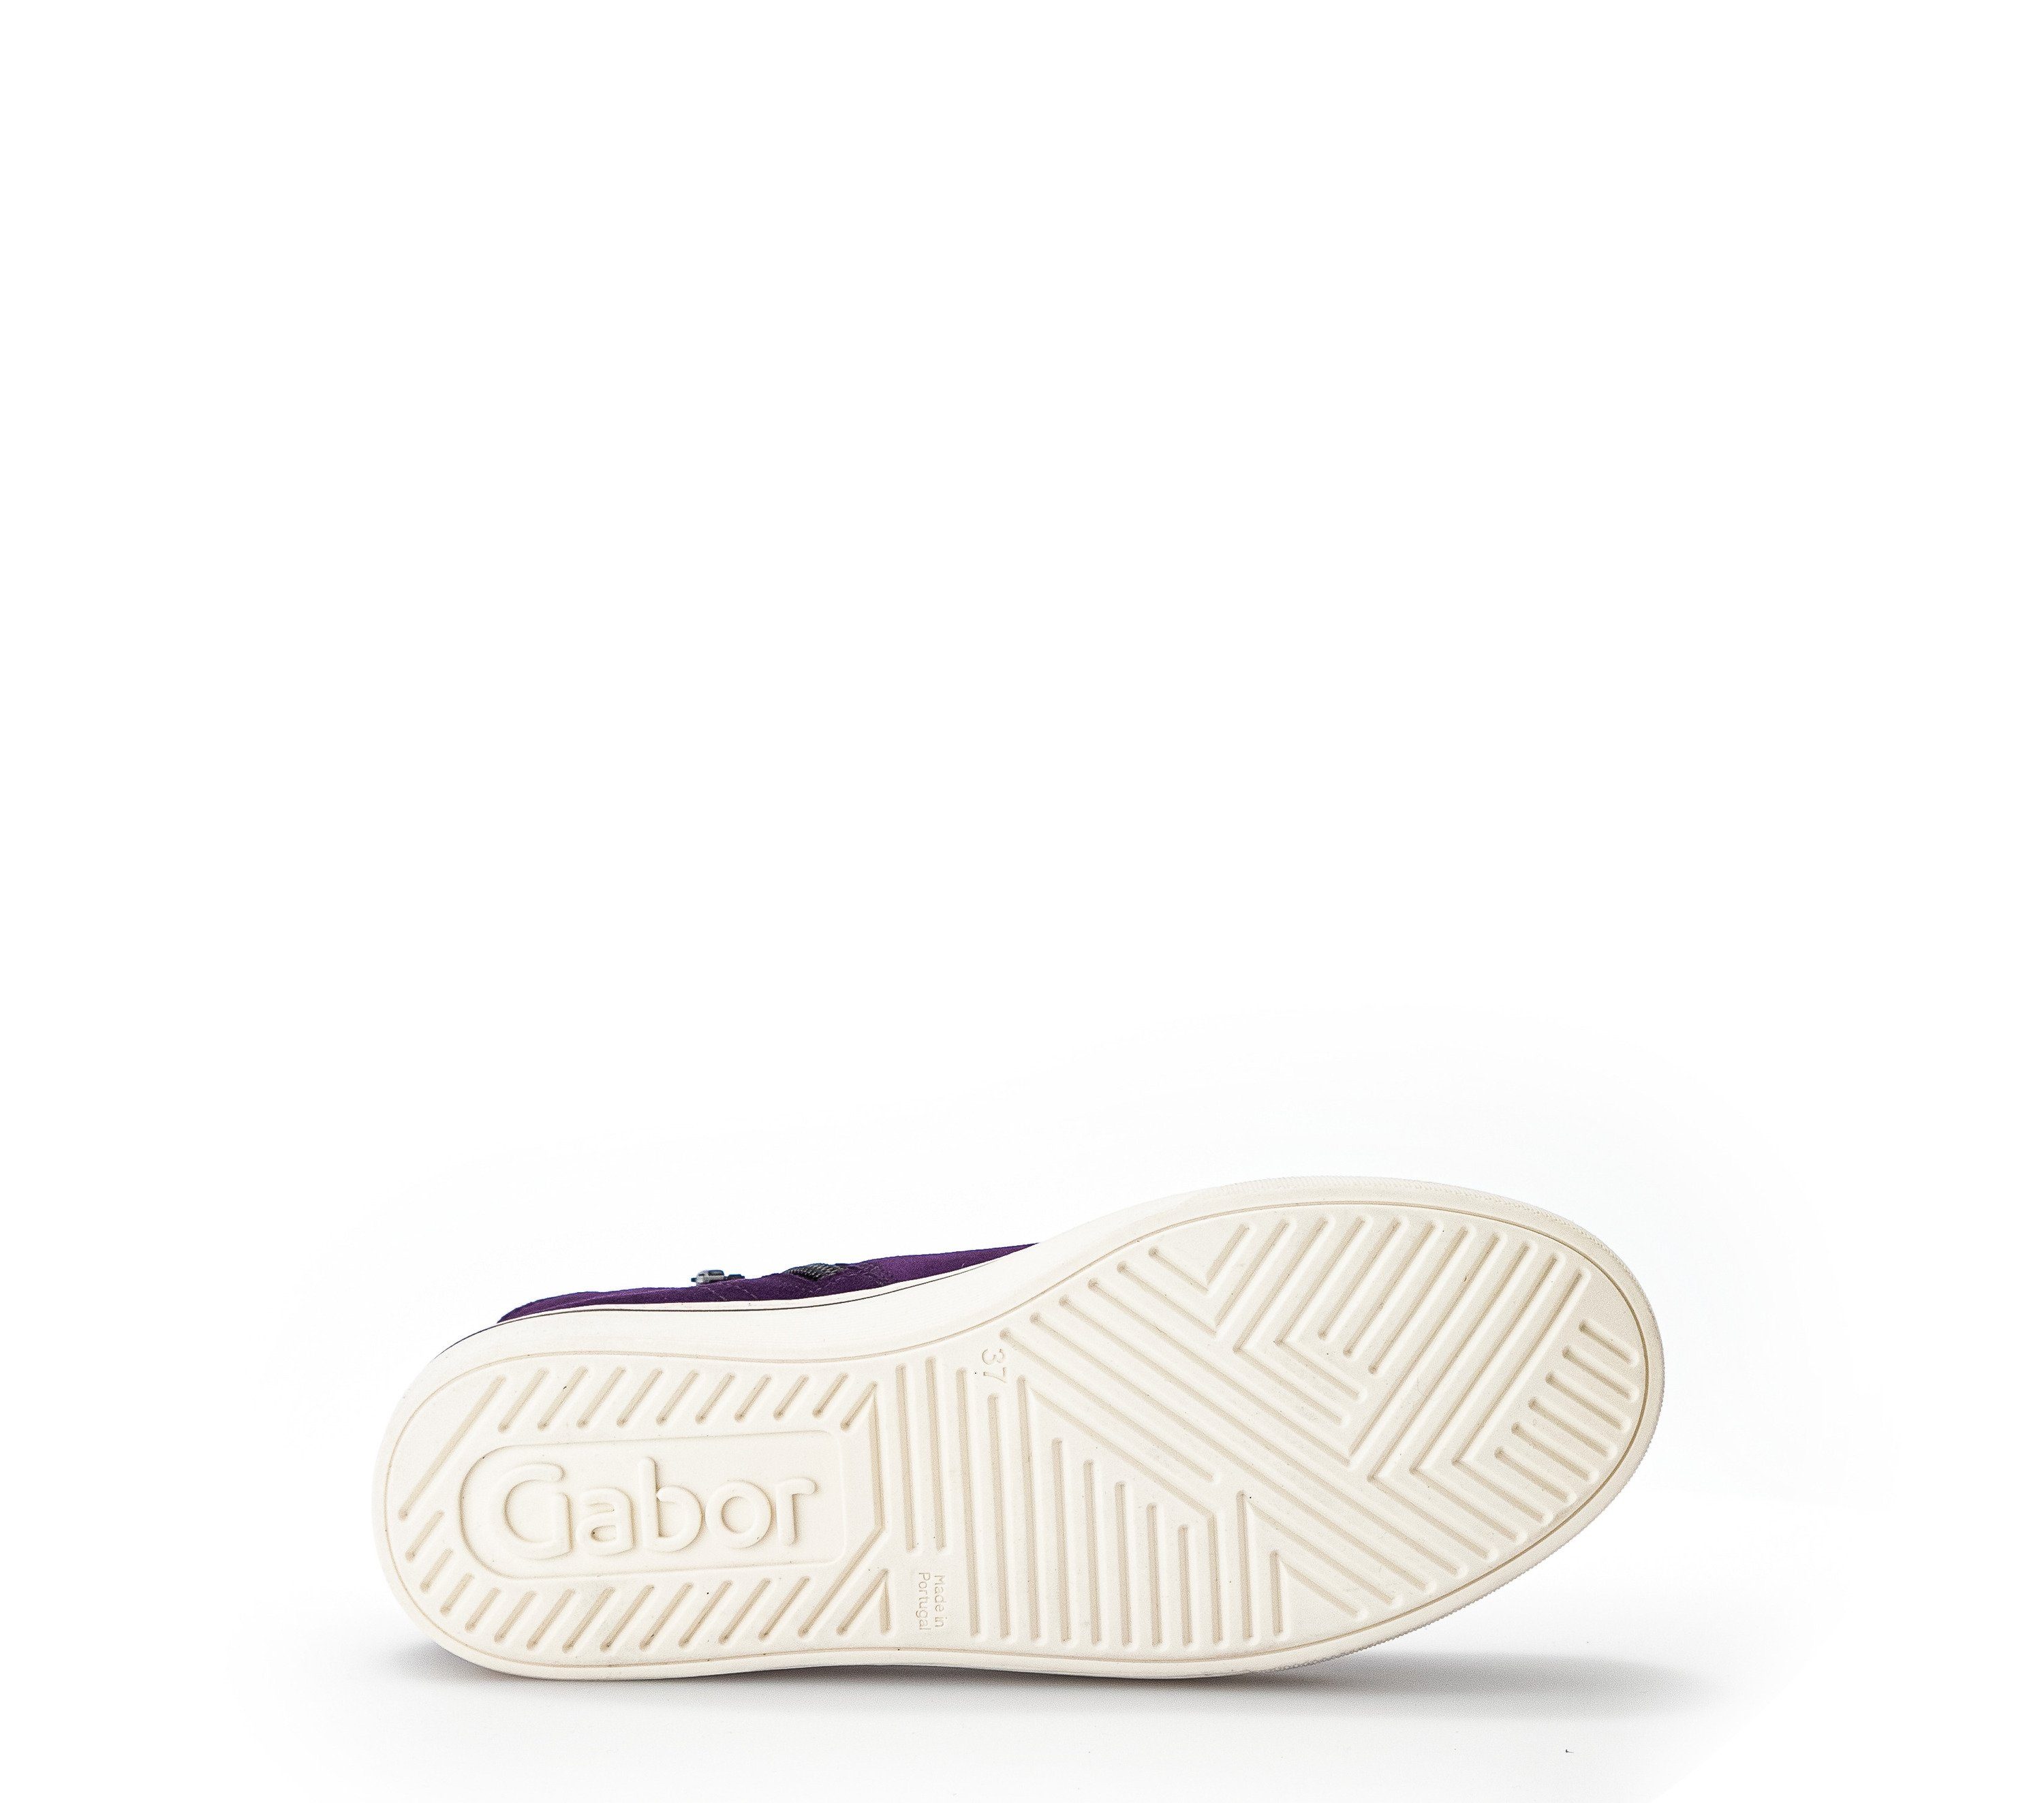 Gabor Sneaker Lila (purple)